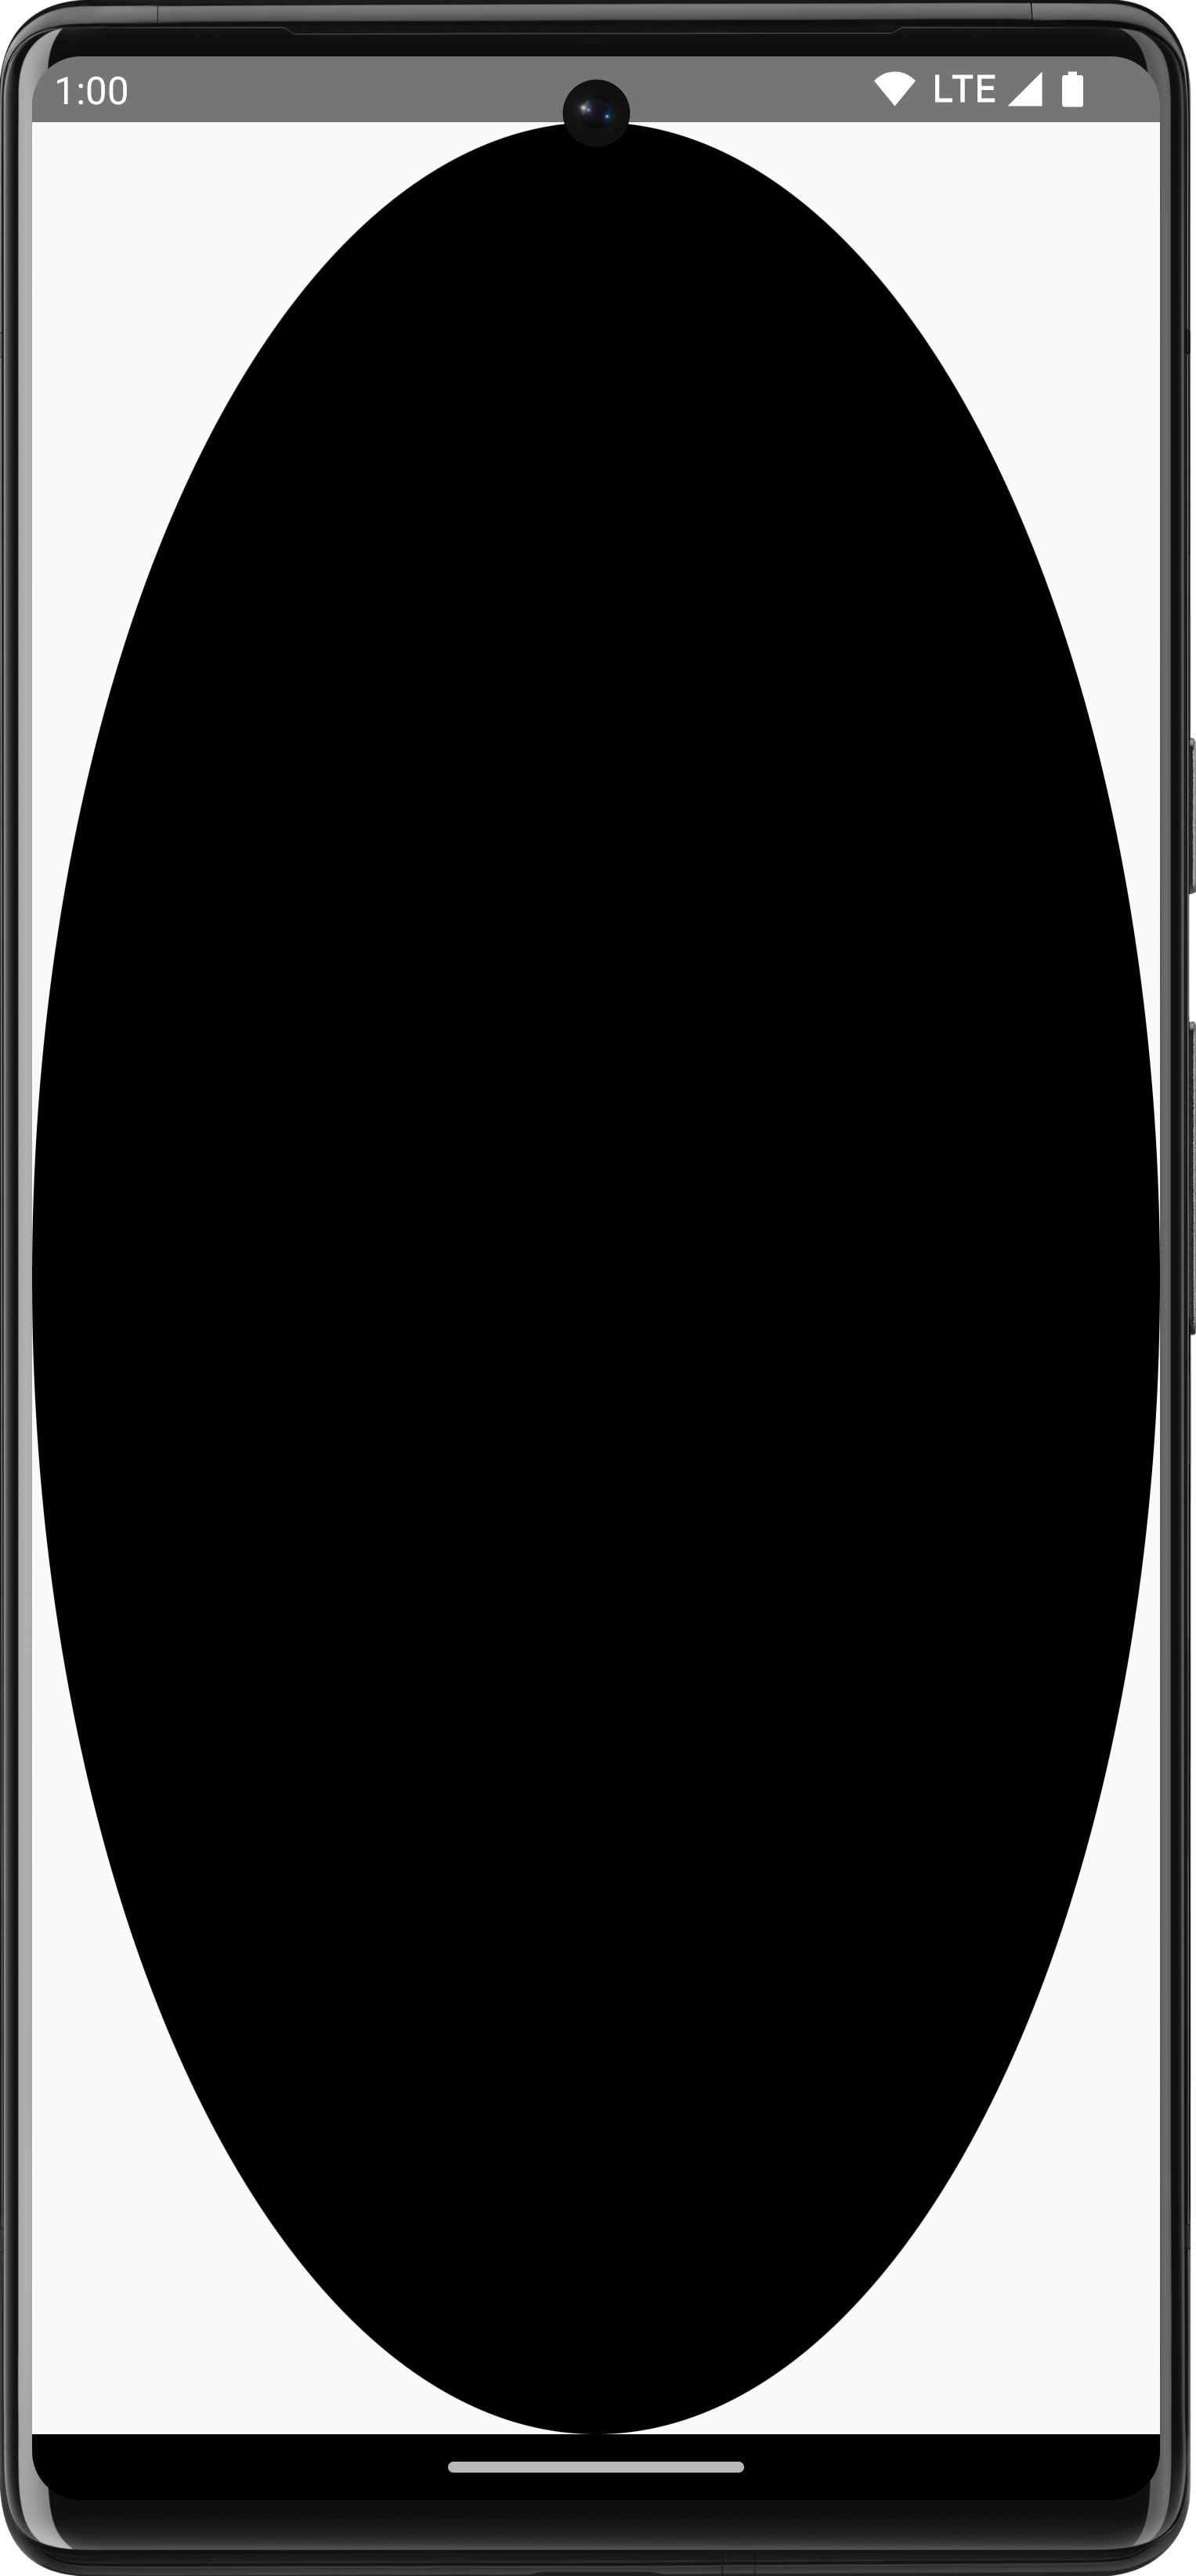 काले रंग का अंडाकार शेपड्रॉबल, जिसका साइज़ बड़ा हो रहा है